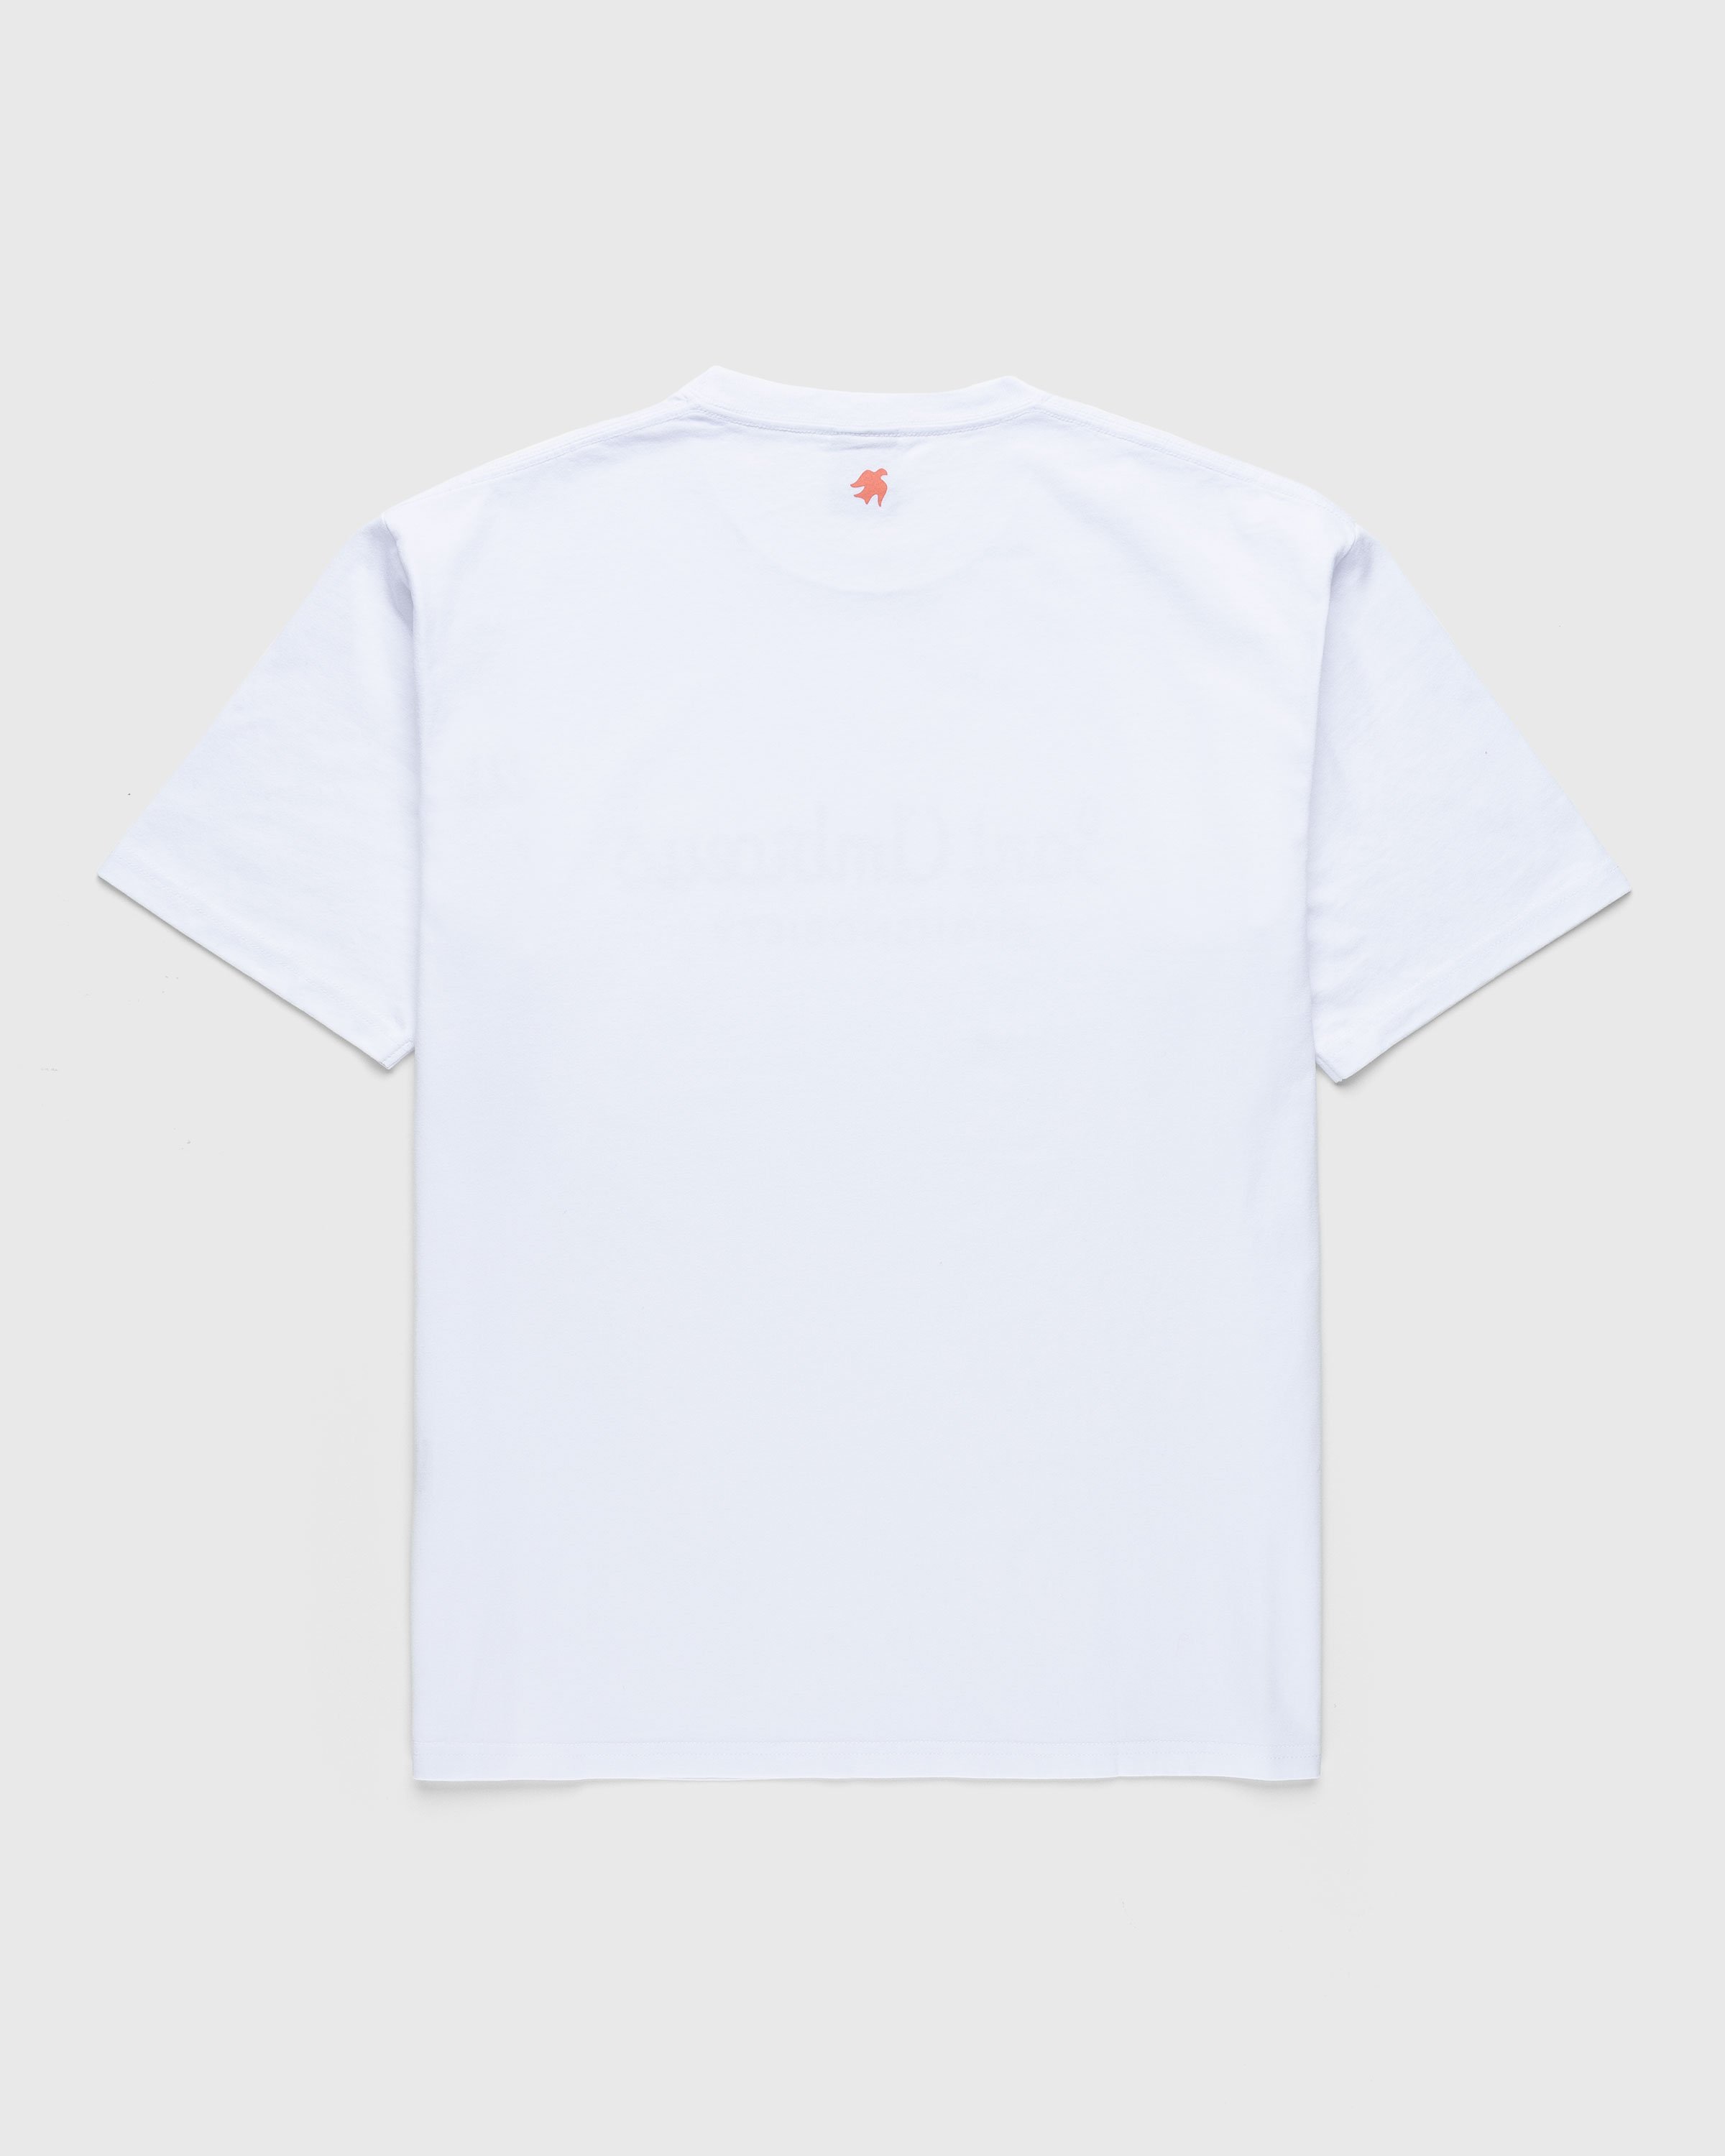 Highsnobiety x Sant Ambroeus - White T-Shirt - Clothing - White - Image 2